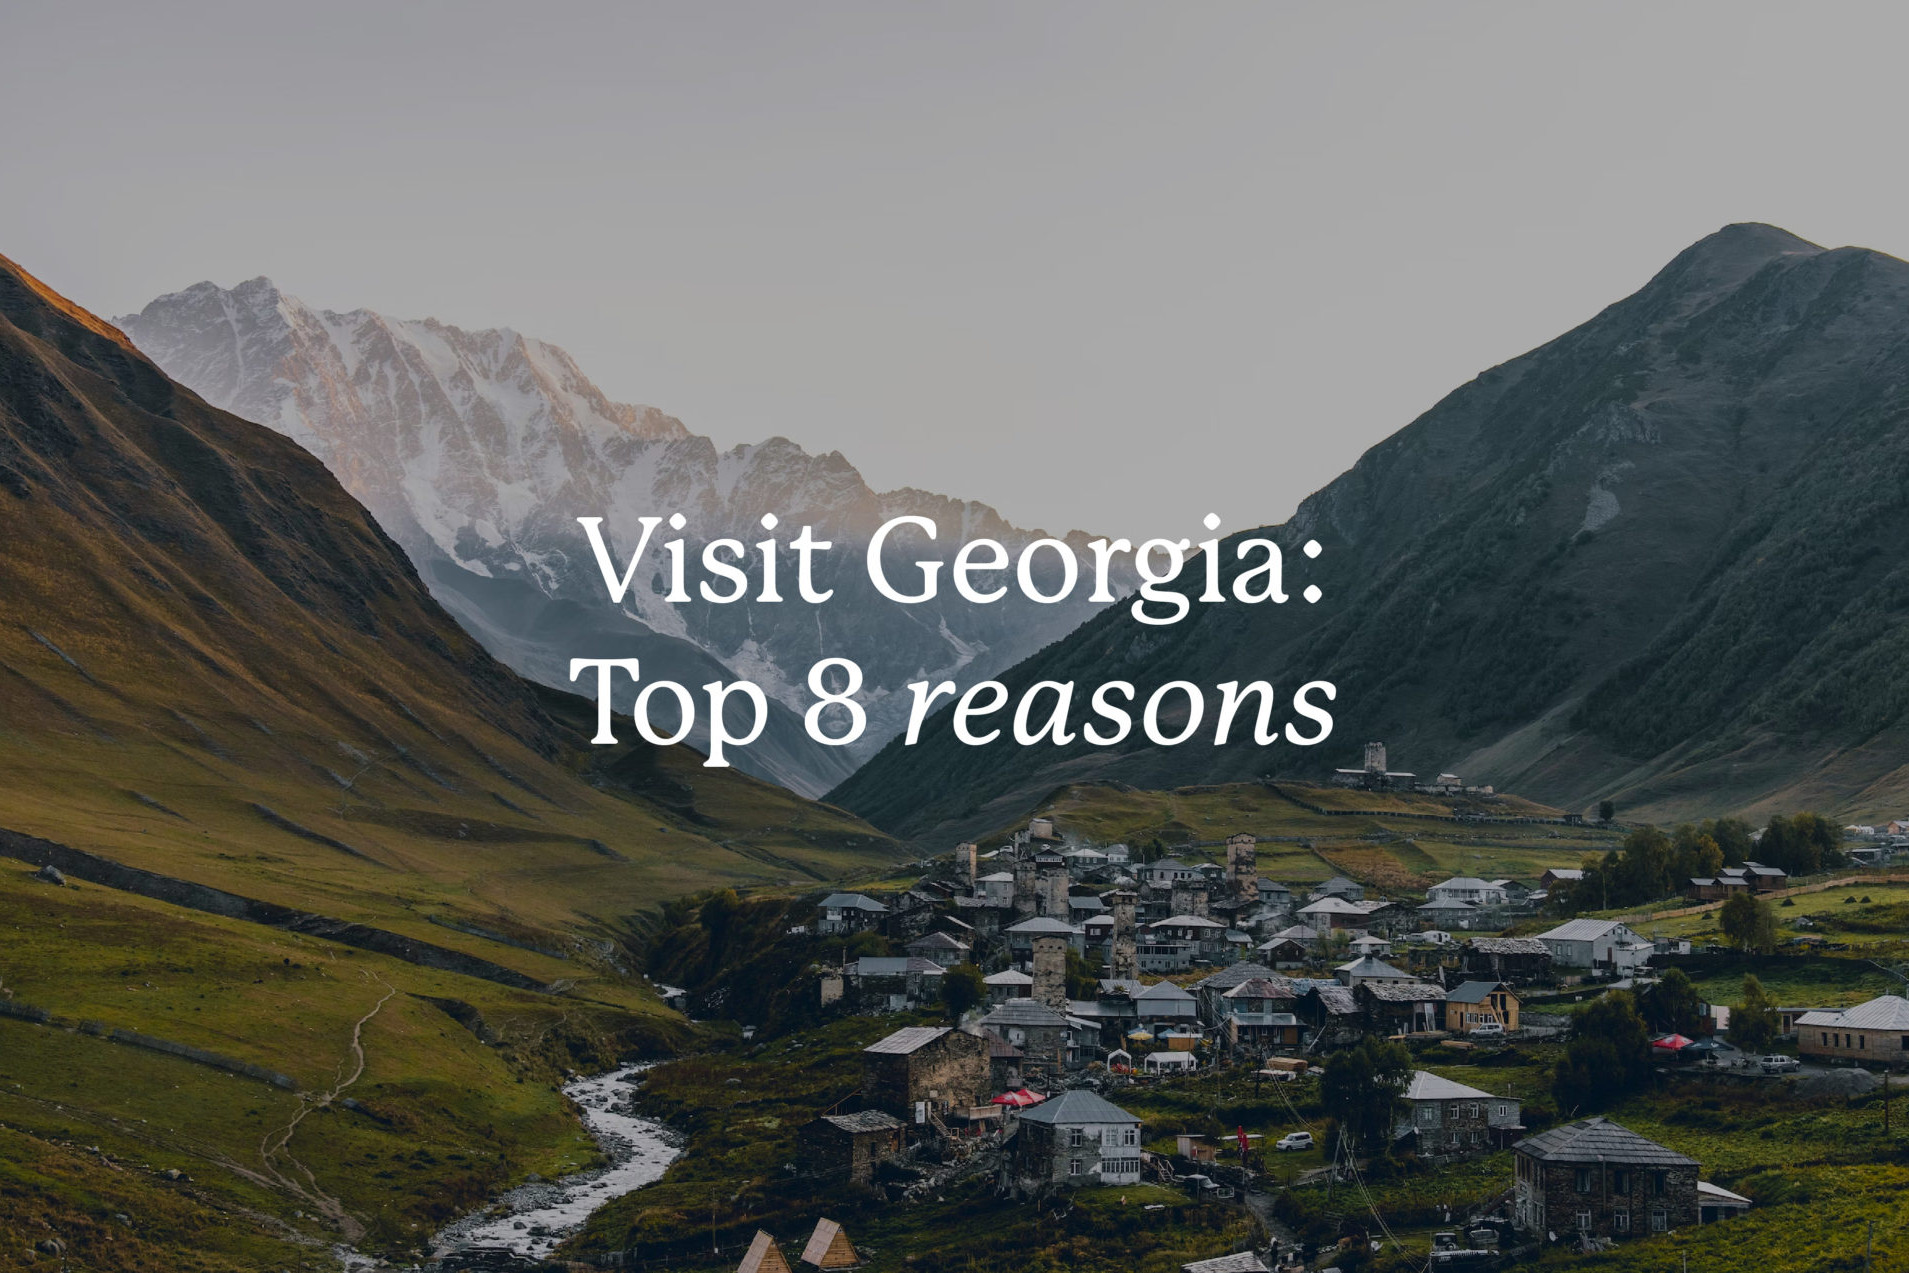 visit Georgia: Top 8 reasons